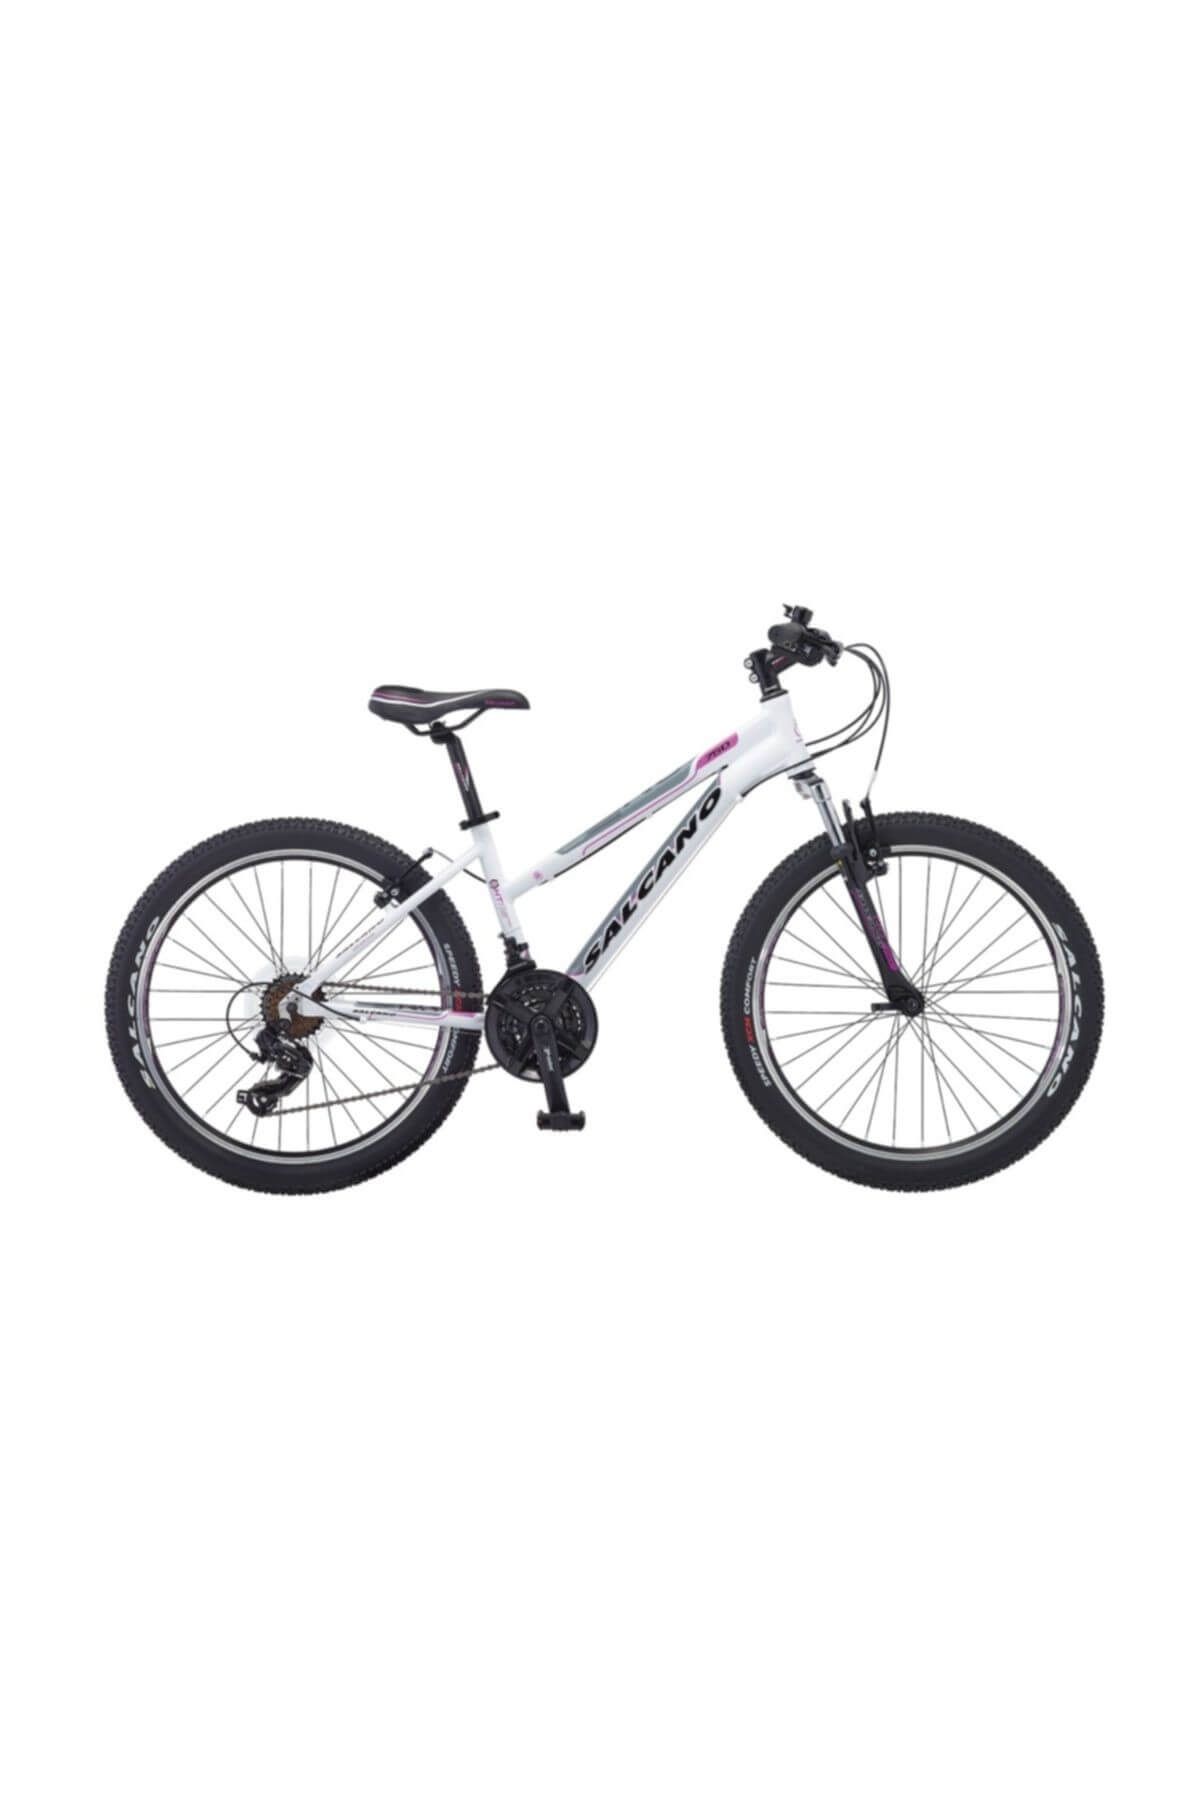 Salcano NG 750 Lady 24 Jant Bisiklet 2018 Model 013 Siyah Mor Siyah